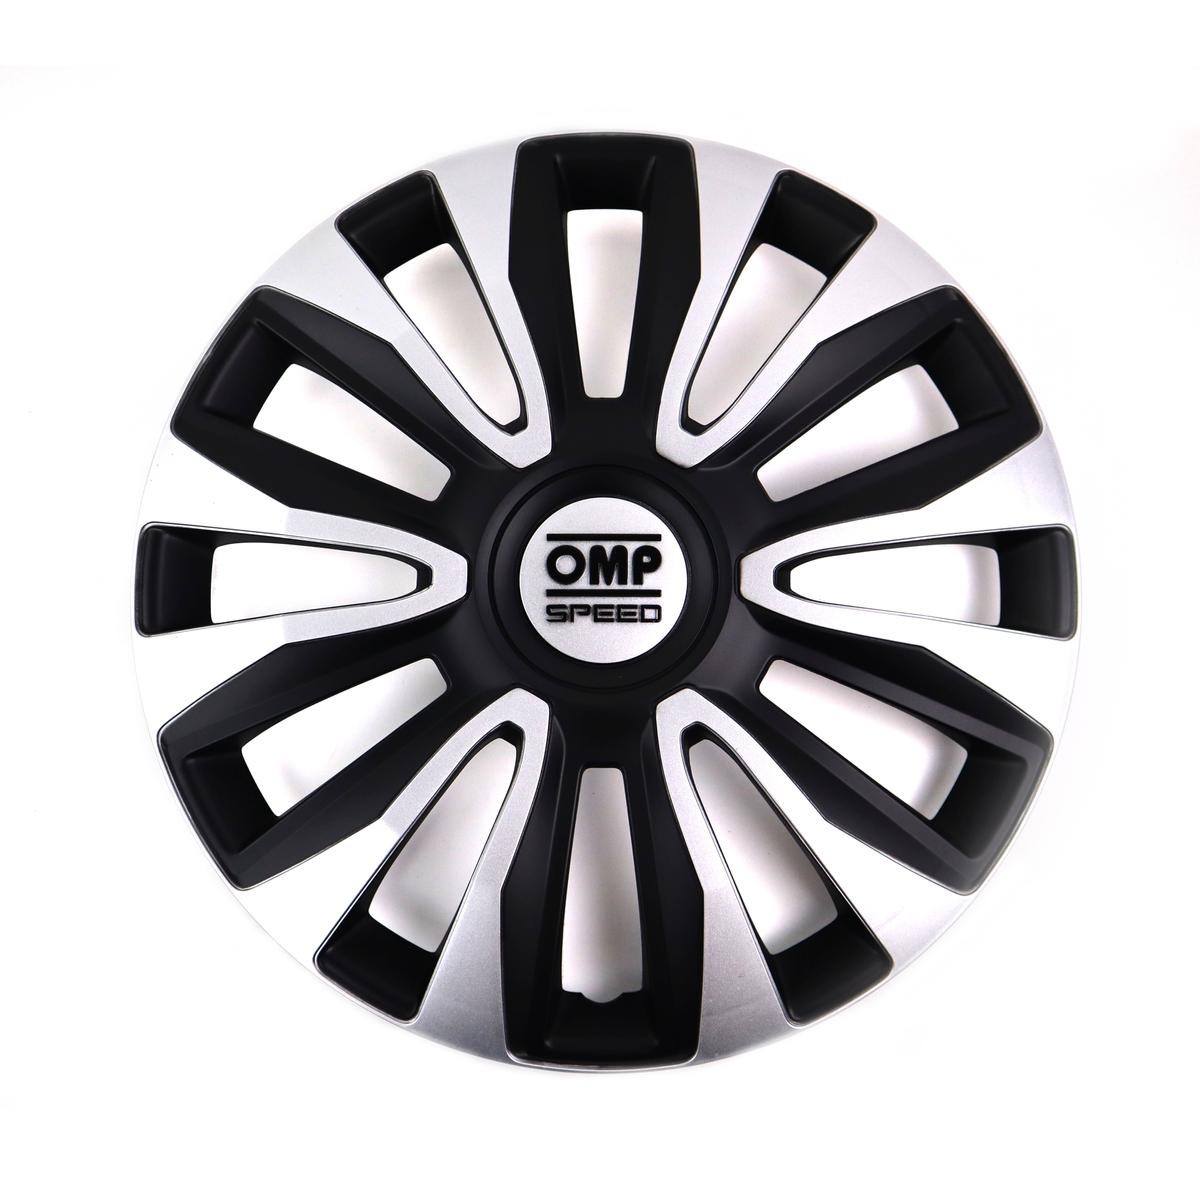 OMP OMPS07011412 Car wheel trims OPEL Meriva A (X03) 14 Inch black, silver